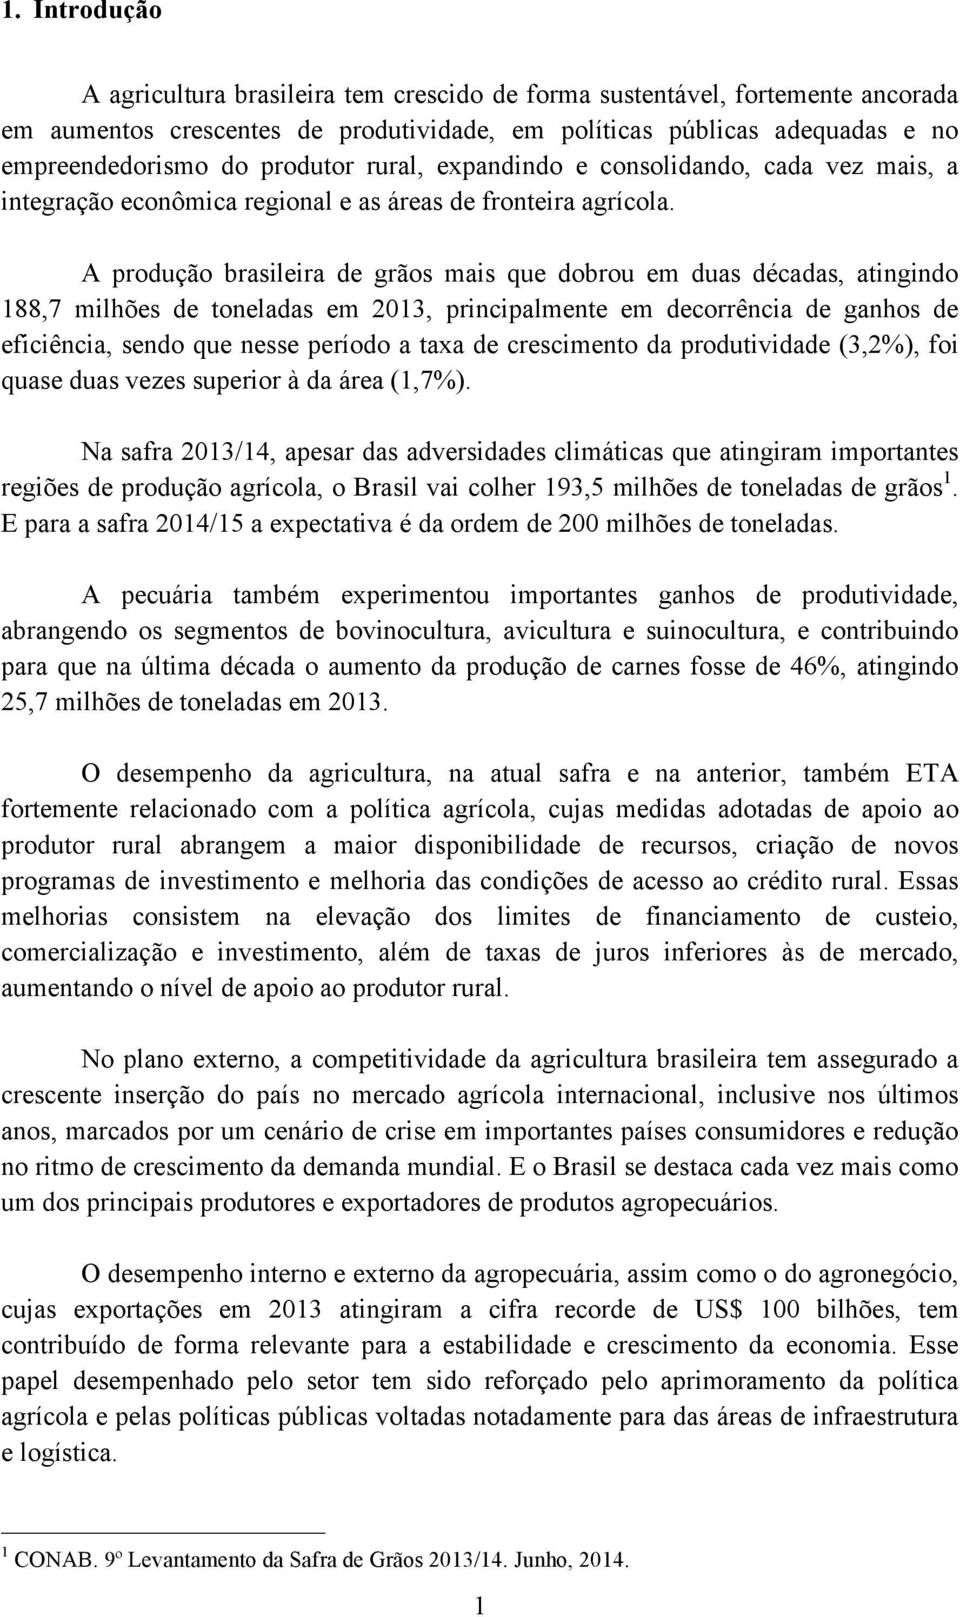 A produção brasileira de grãos mais que dobrou em duas décadas, atingindo 188,7 milhões de toneladas em 2013, principalmente em decorrência de ganhos de eficiência, sendo que nesse período a taxa de